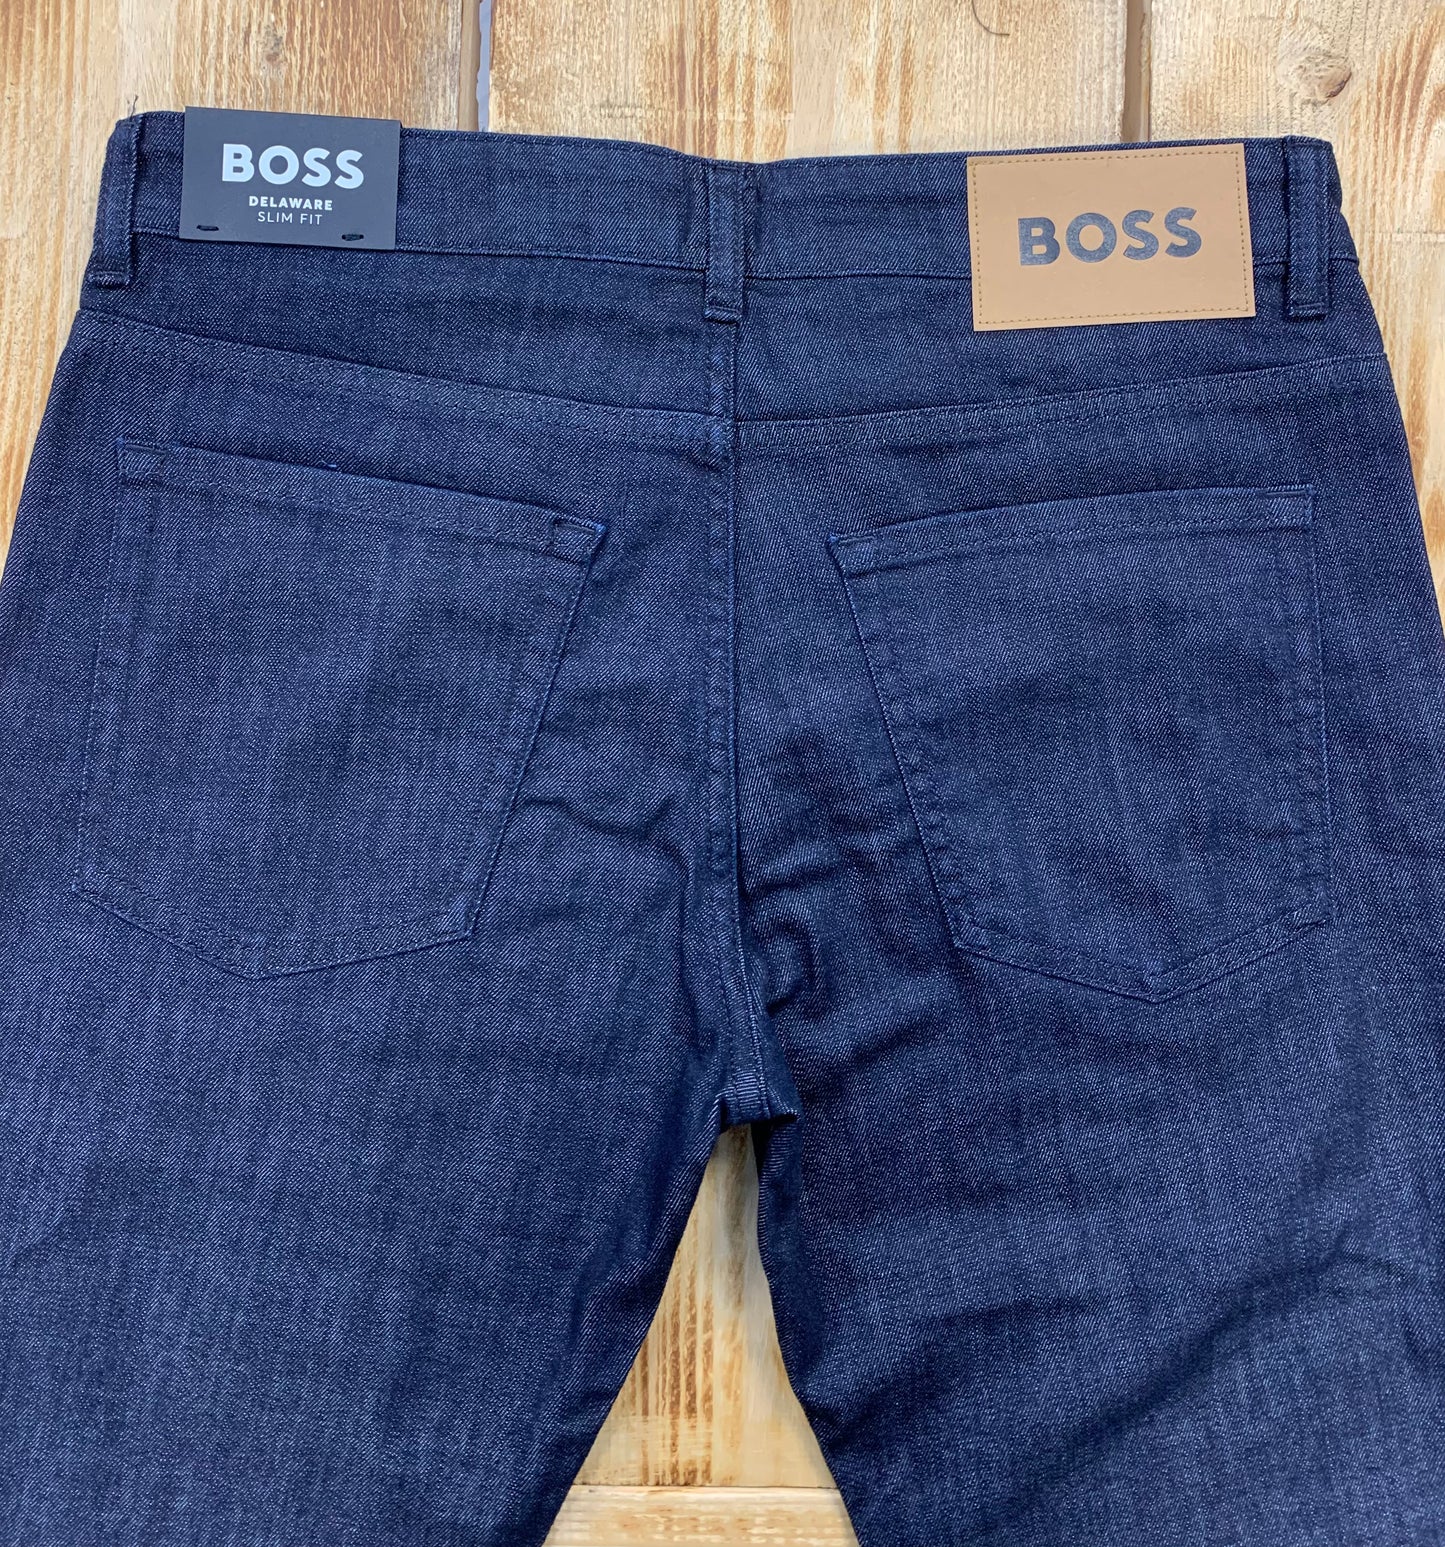 BOSS Delaware3-1 Jeans